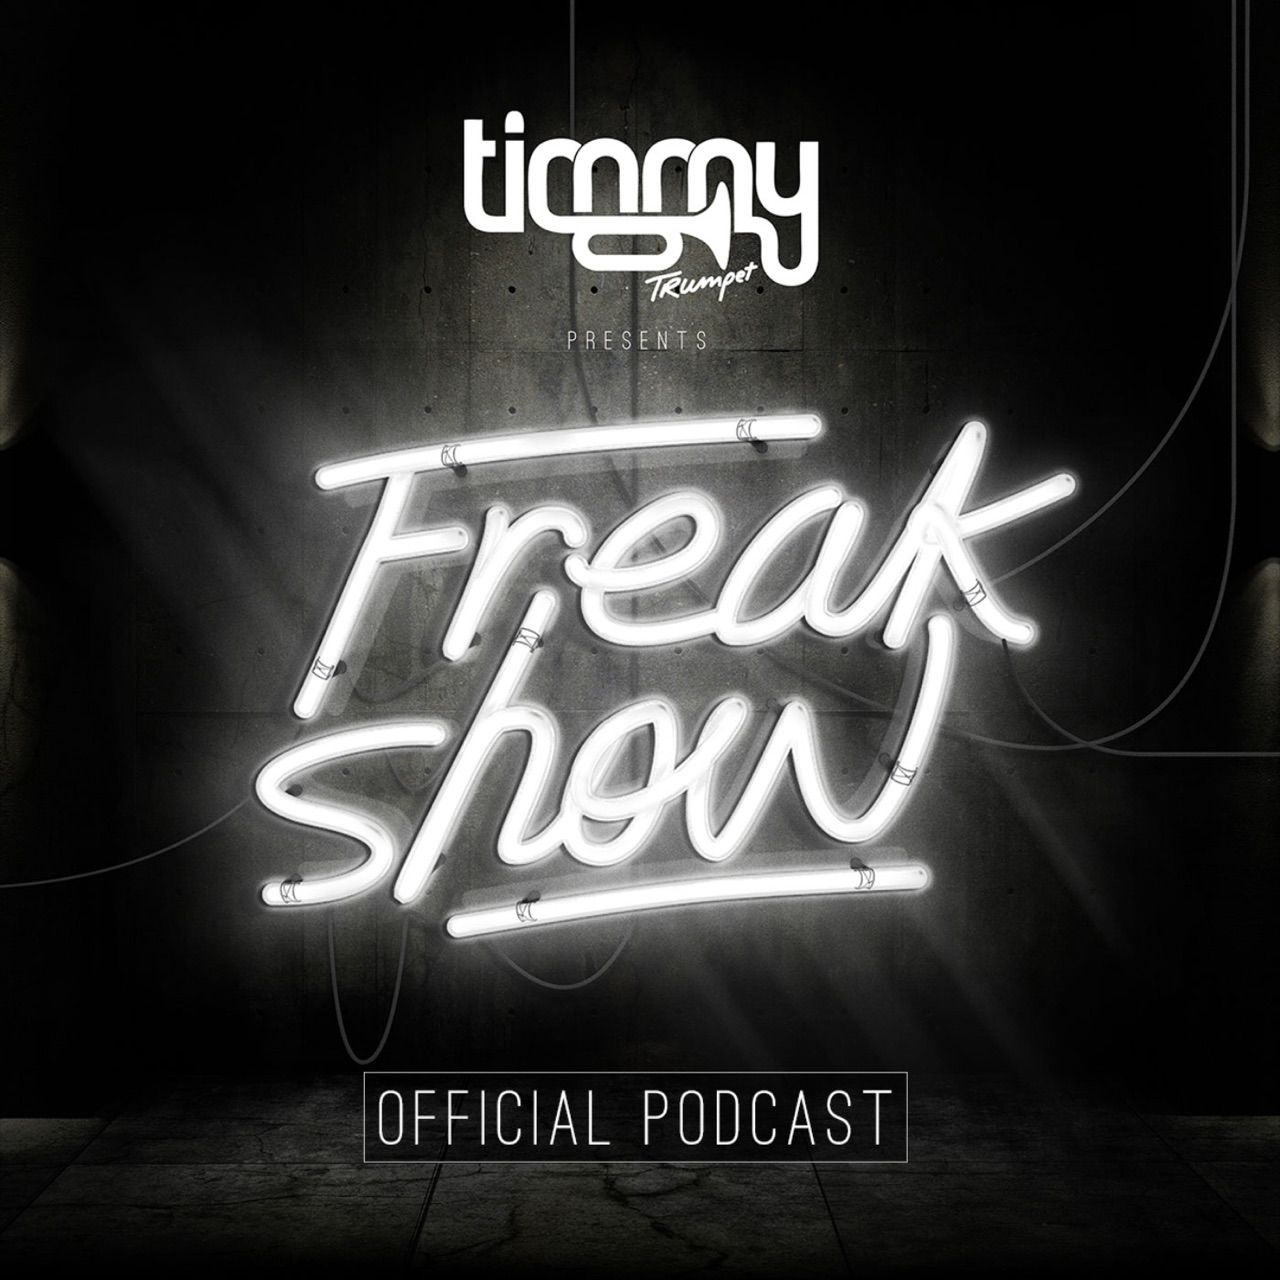 Freaks слушать. Timmy Trumpet Freaks. Freaks обложка. Тимми трампет Freaks. Трек Freak show.